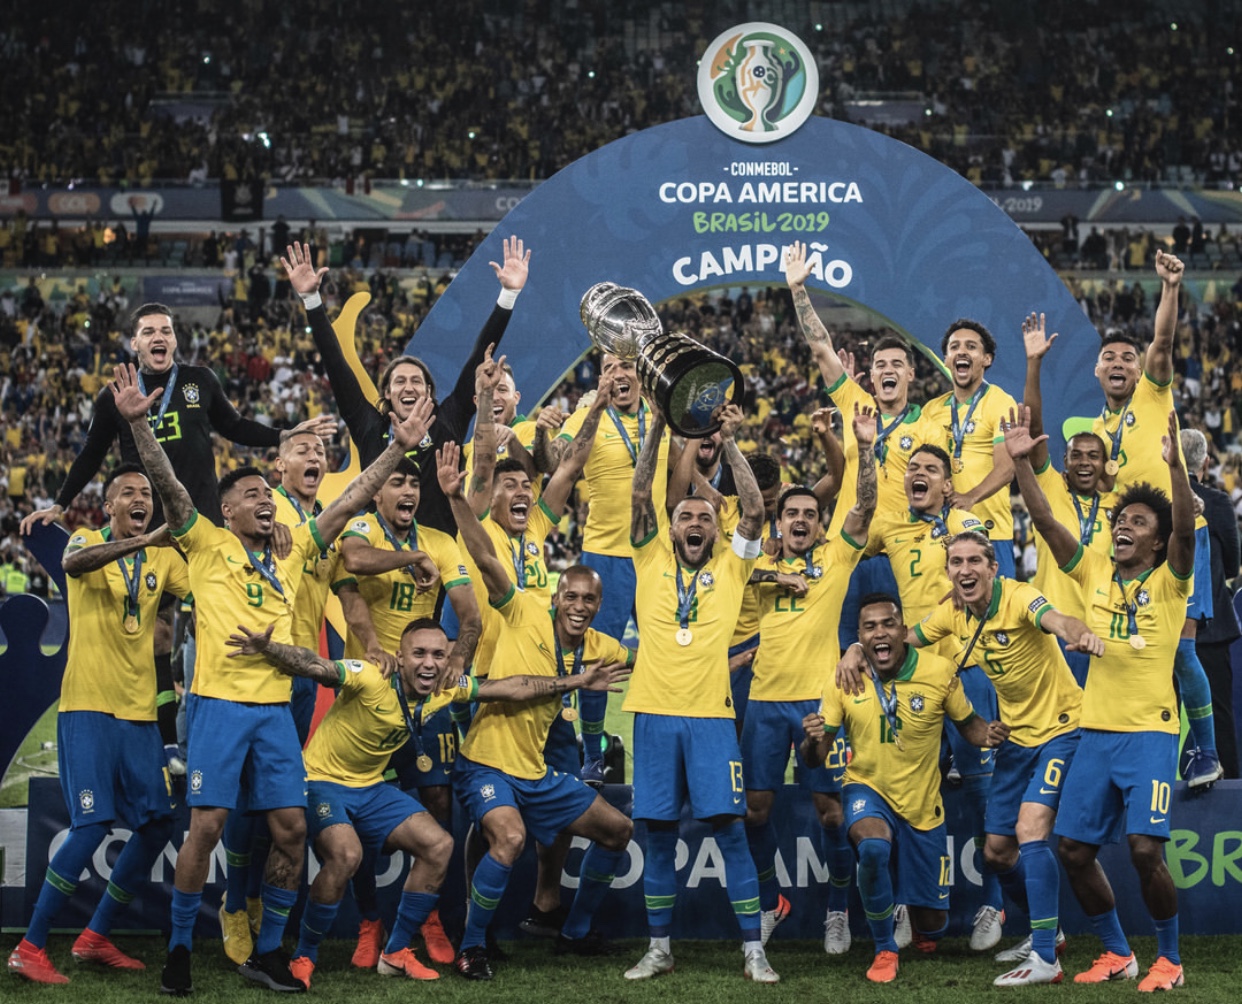 2019 copa america brazil